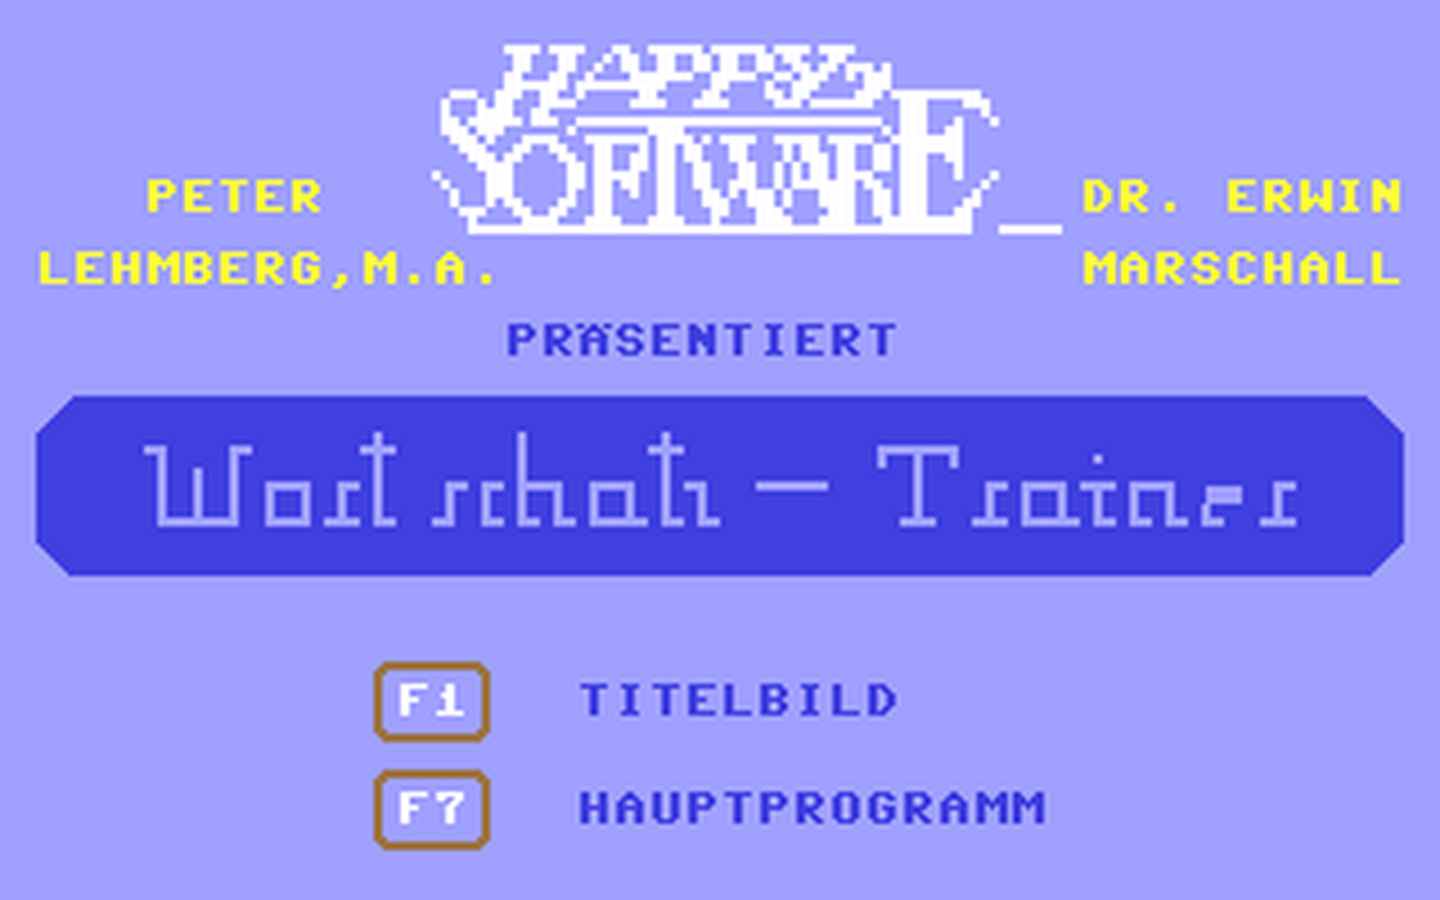 C64 GameBase Wortschatz-Trainer_Latein_-_Roma_I Happy_Software_[Markt_&_Technik] 1984